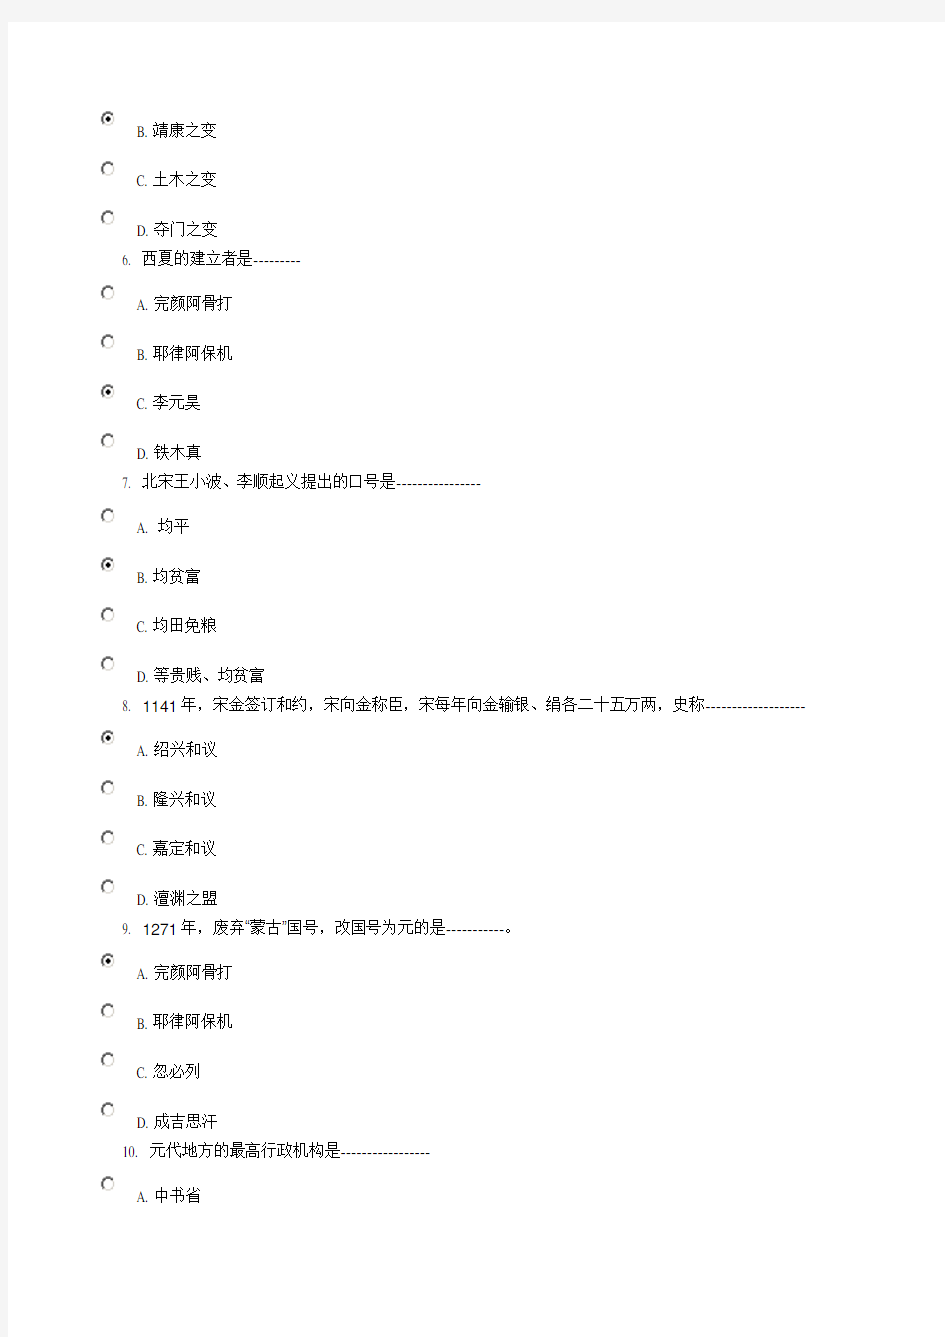 简明中国古代史网上形考作业第二次-答案复习过程